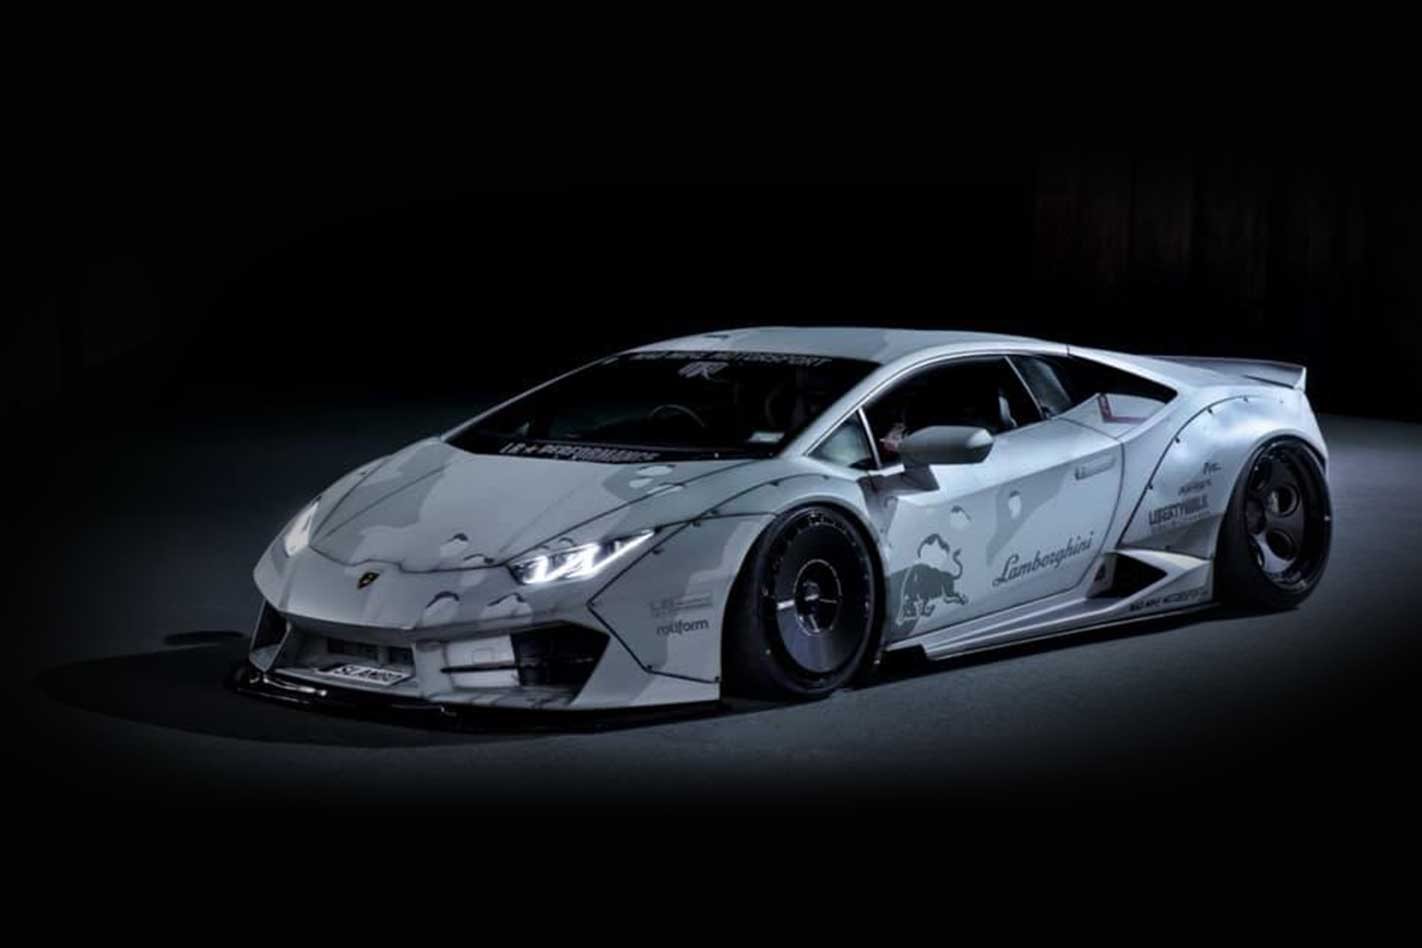 ‘Mad Mike’ Whiddett's Lamborghini Huracan drift car: Slambo